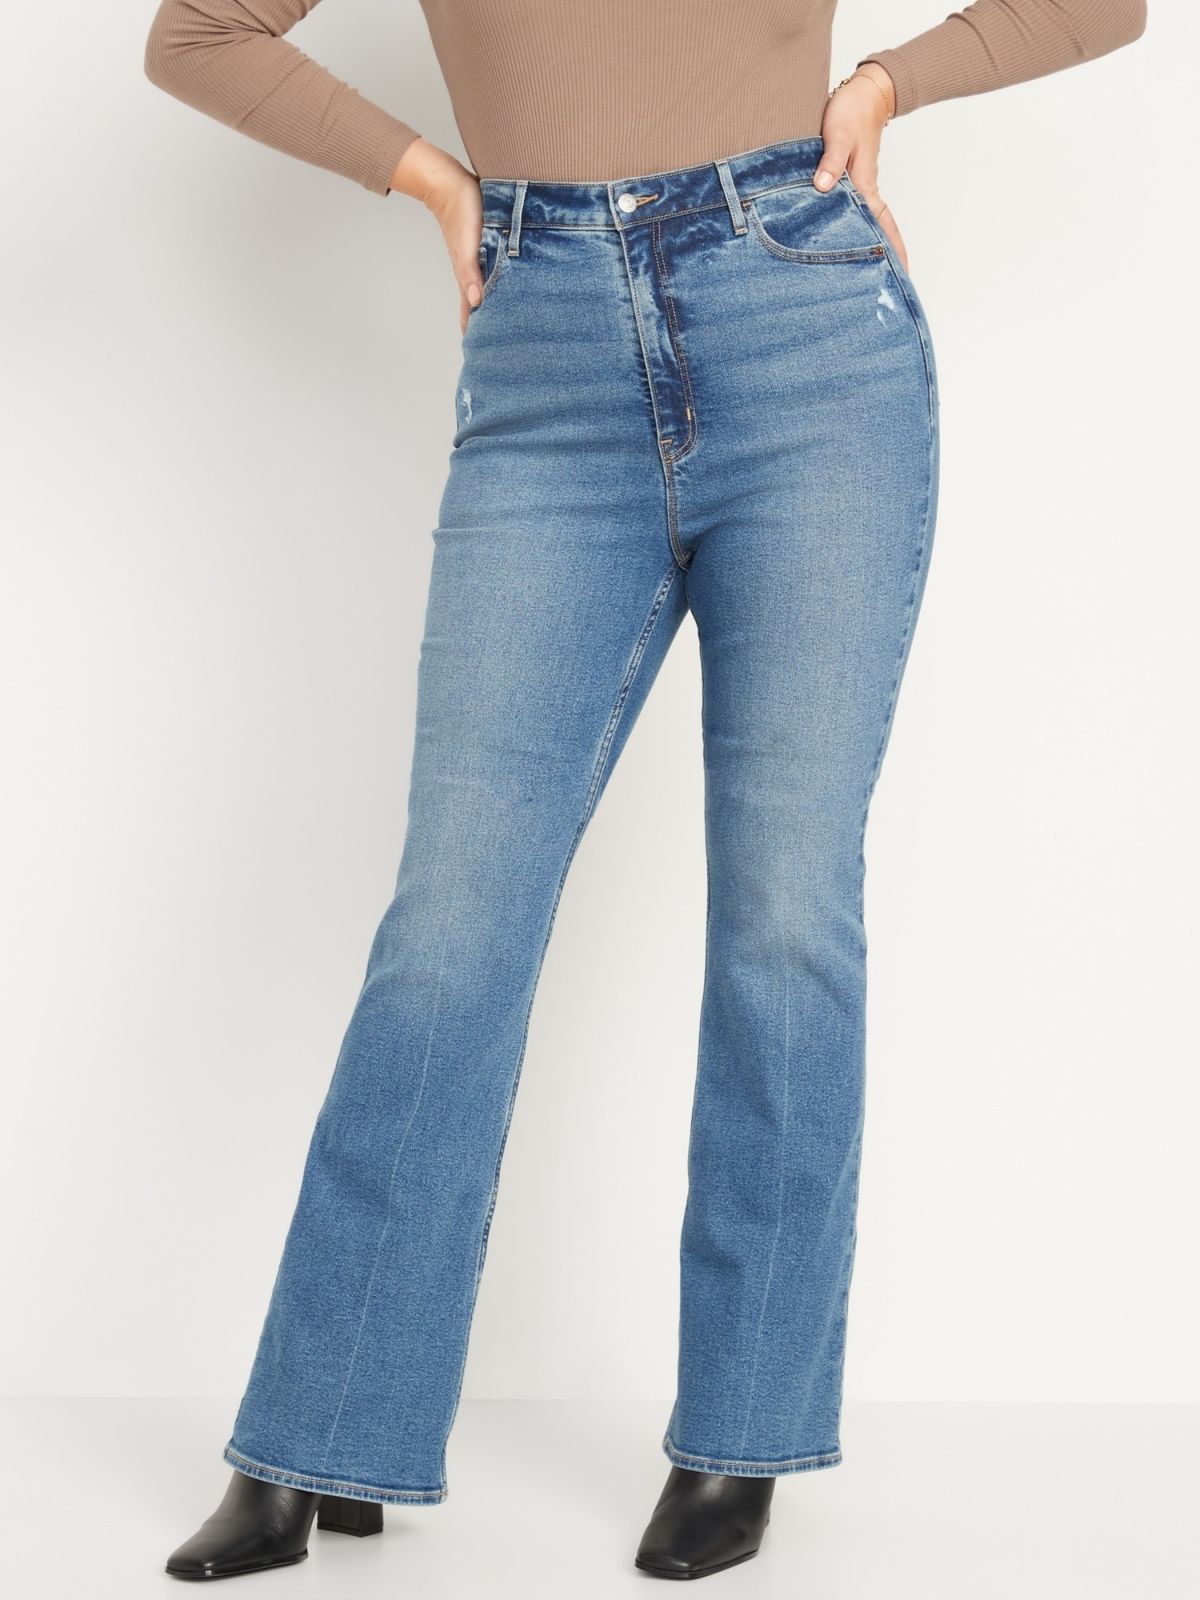  ג'ינס בגזרה מתרחבת של OLD NAVY